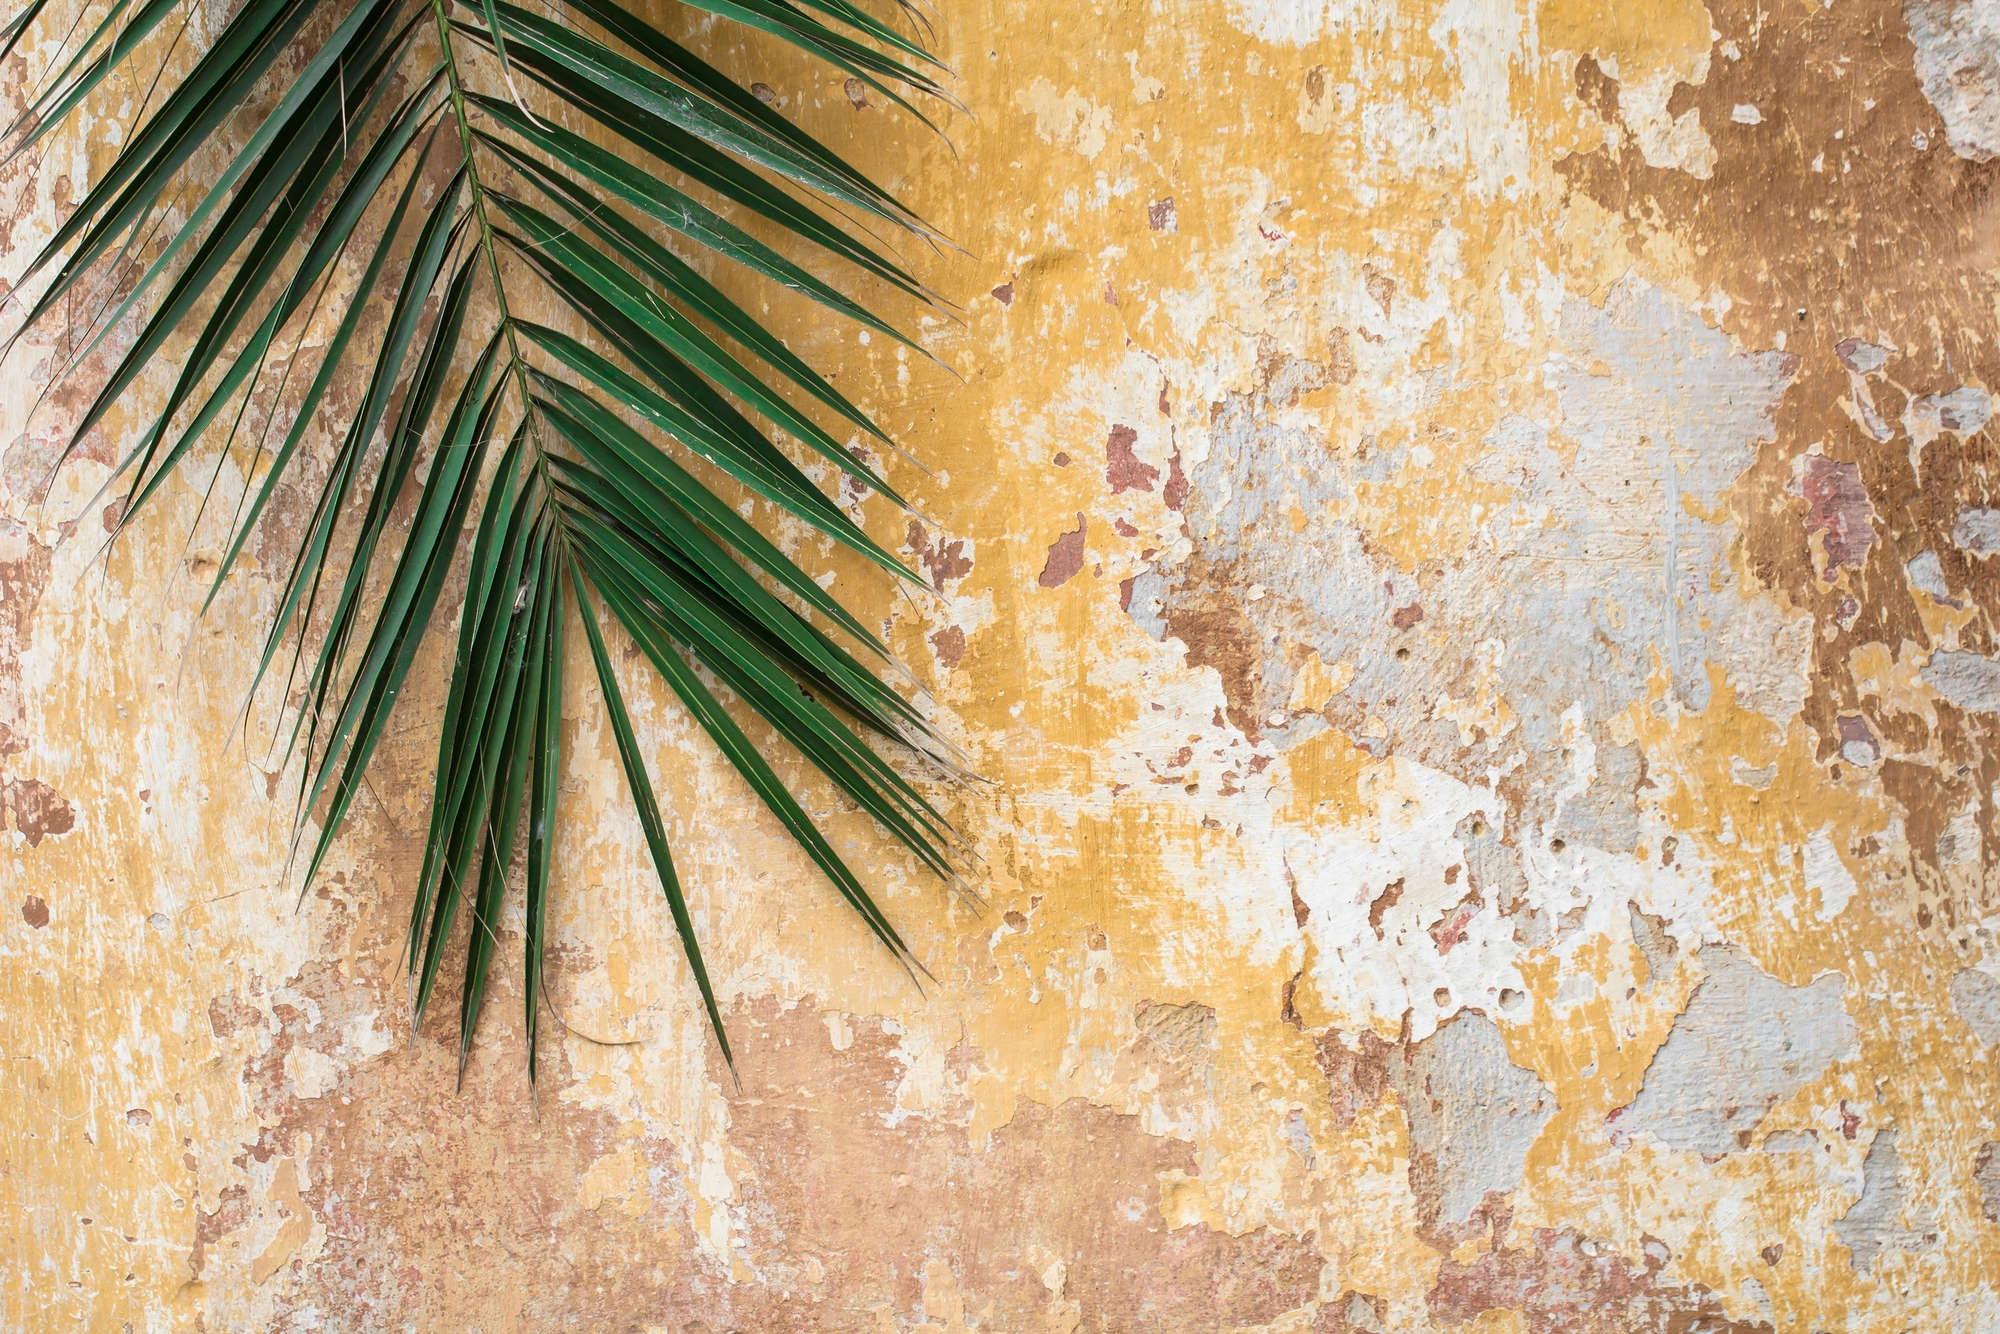             Natuur muurschildering palmblad voor stenen muur op structuurvliesdoek
        